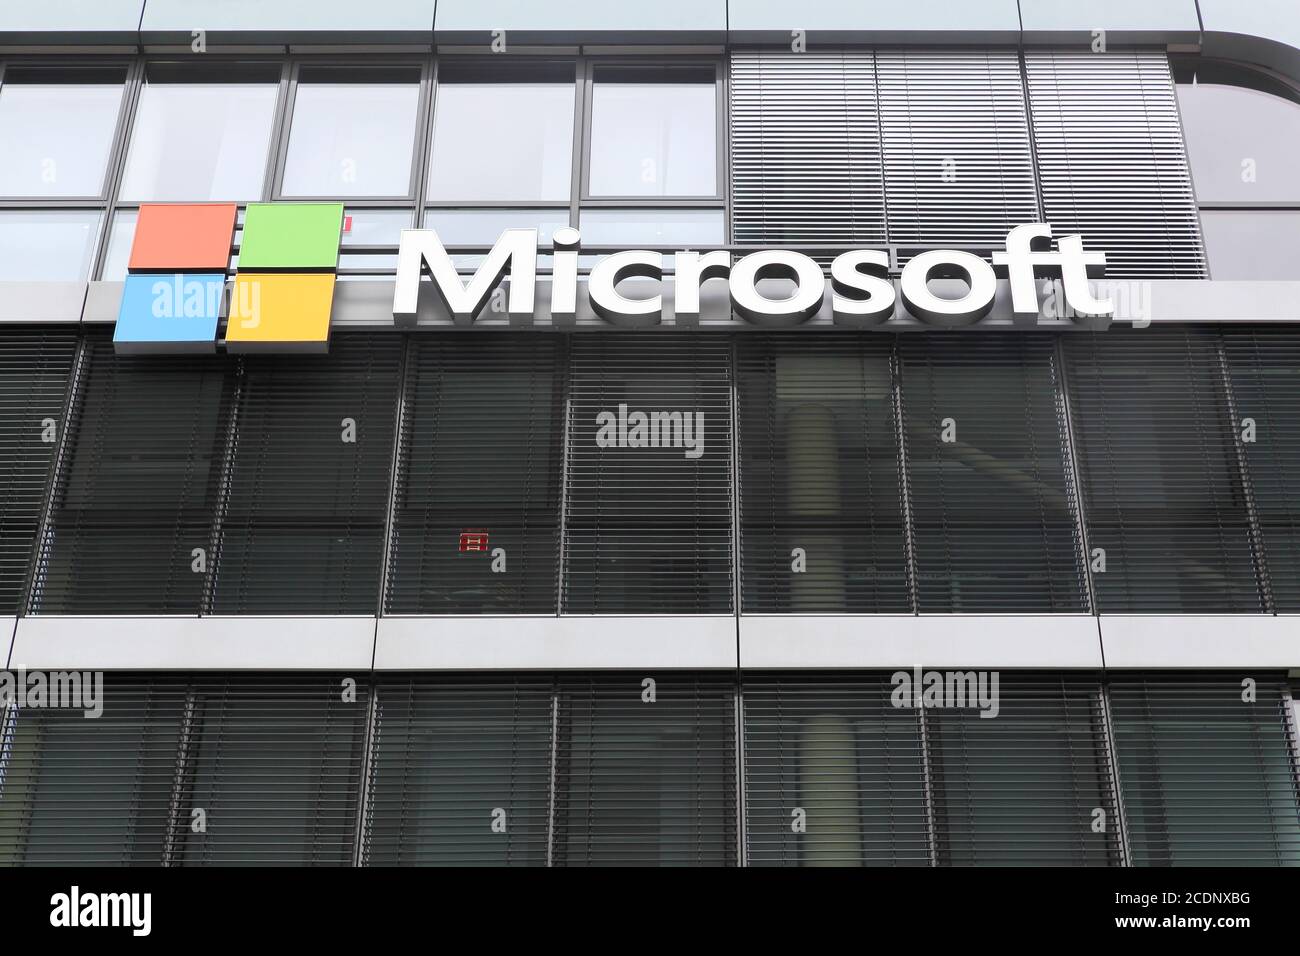 Cologne, Allemagne - 2 juillet 2017 : immeuble de bureaux Microsoft. Microsoft est une société américaine multinationale de technologie Banque D'Images